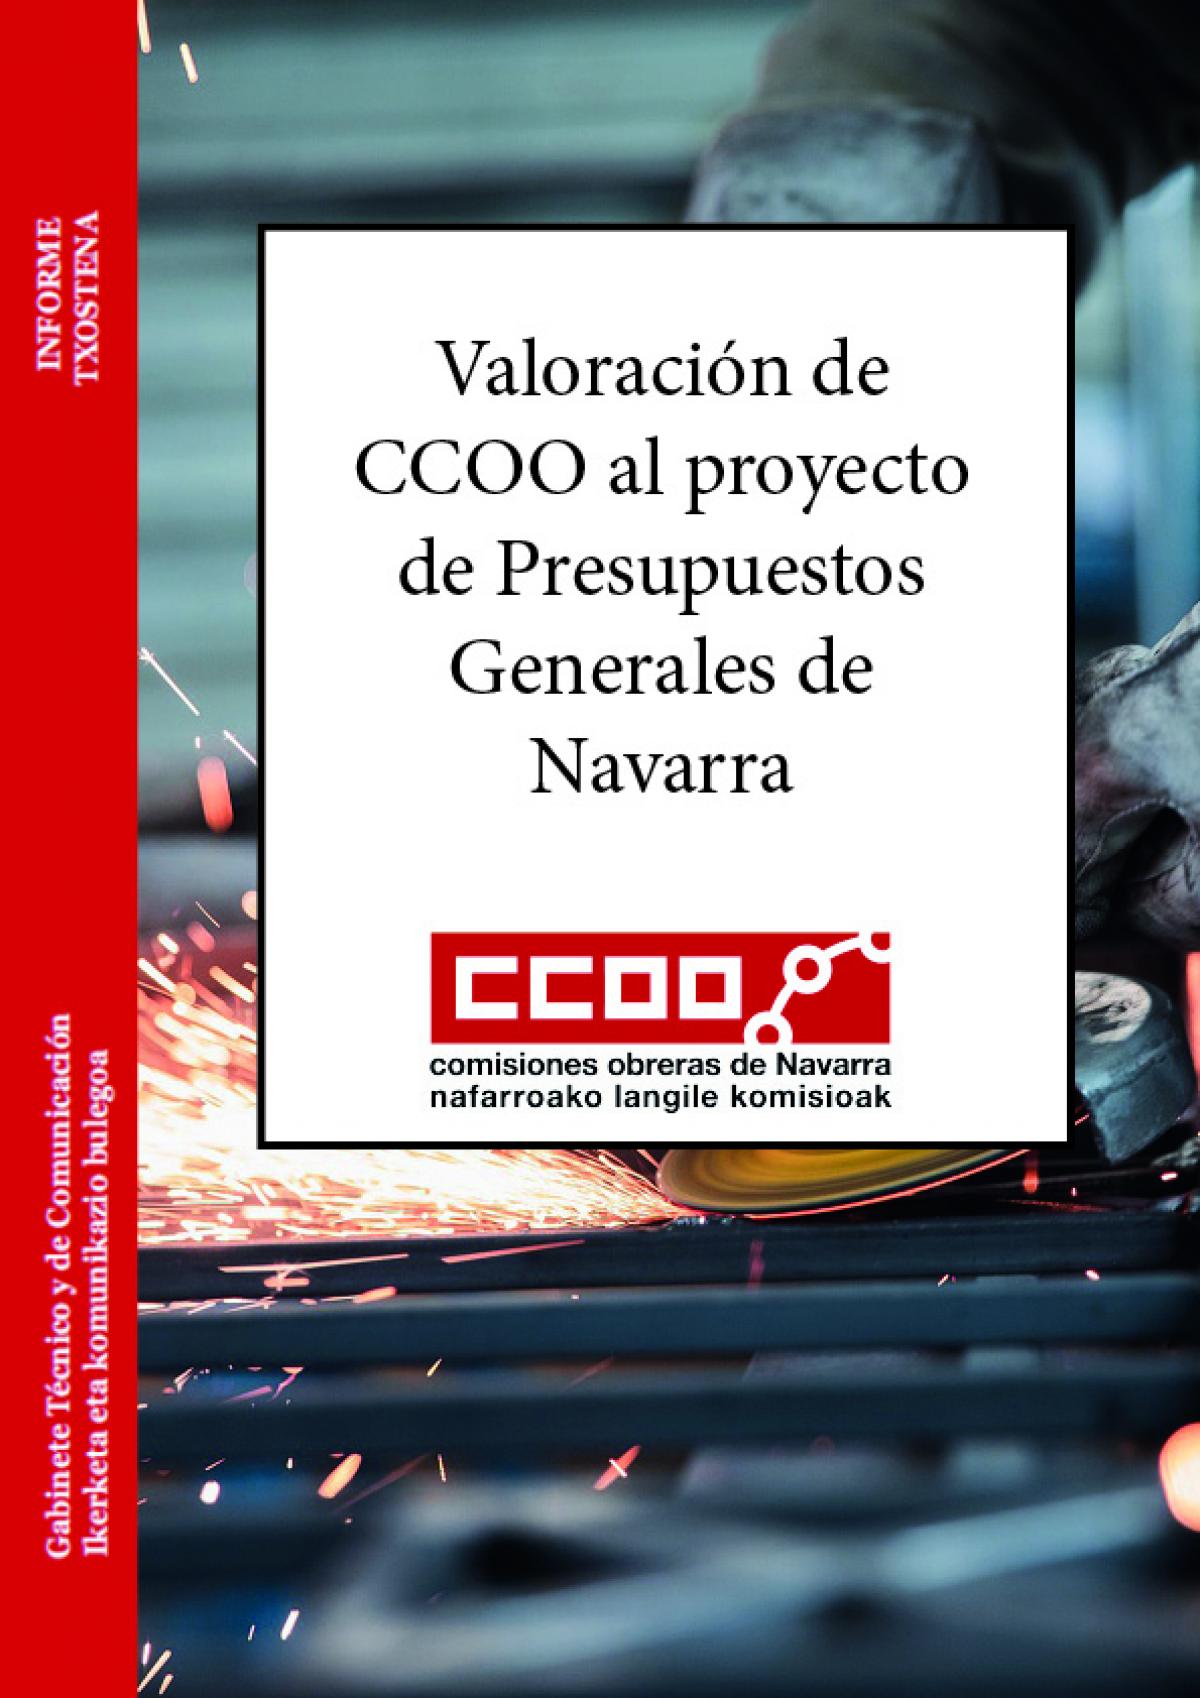 Valoración de CCOO al proyecto de Presupuestos Generales de Navarra.